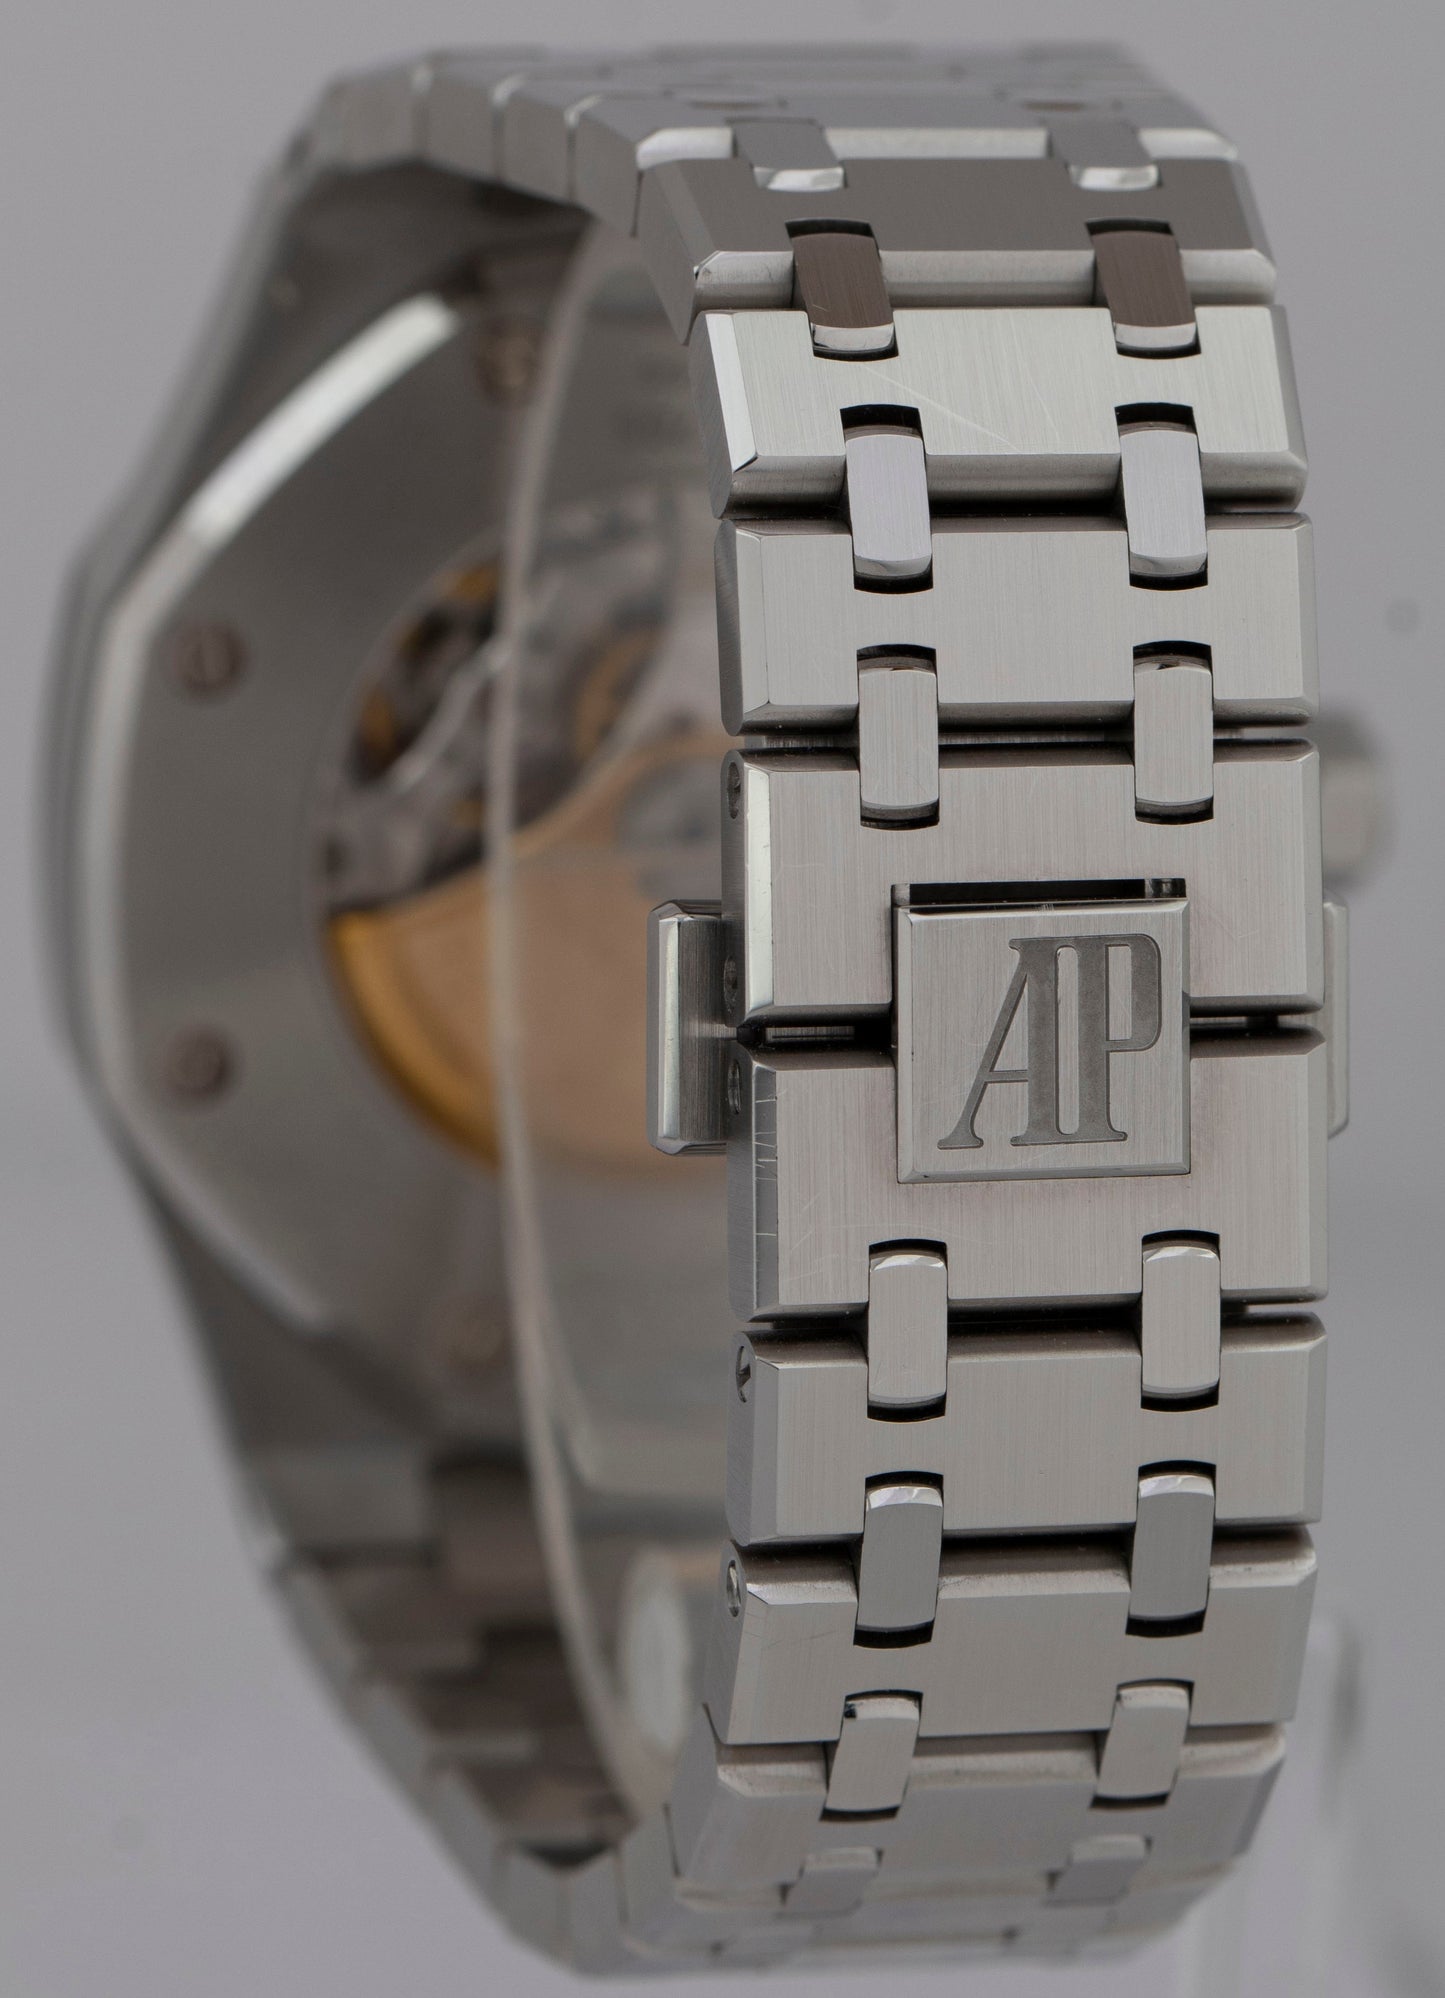 UNPOLISHED Audemars Piguet Royal Oak Black 41mm 15400ST.OO.1220ST.01 Steel Watch